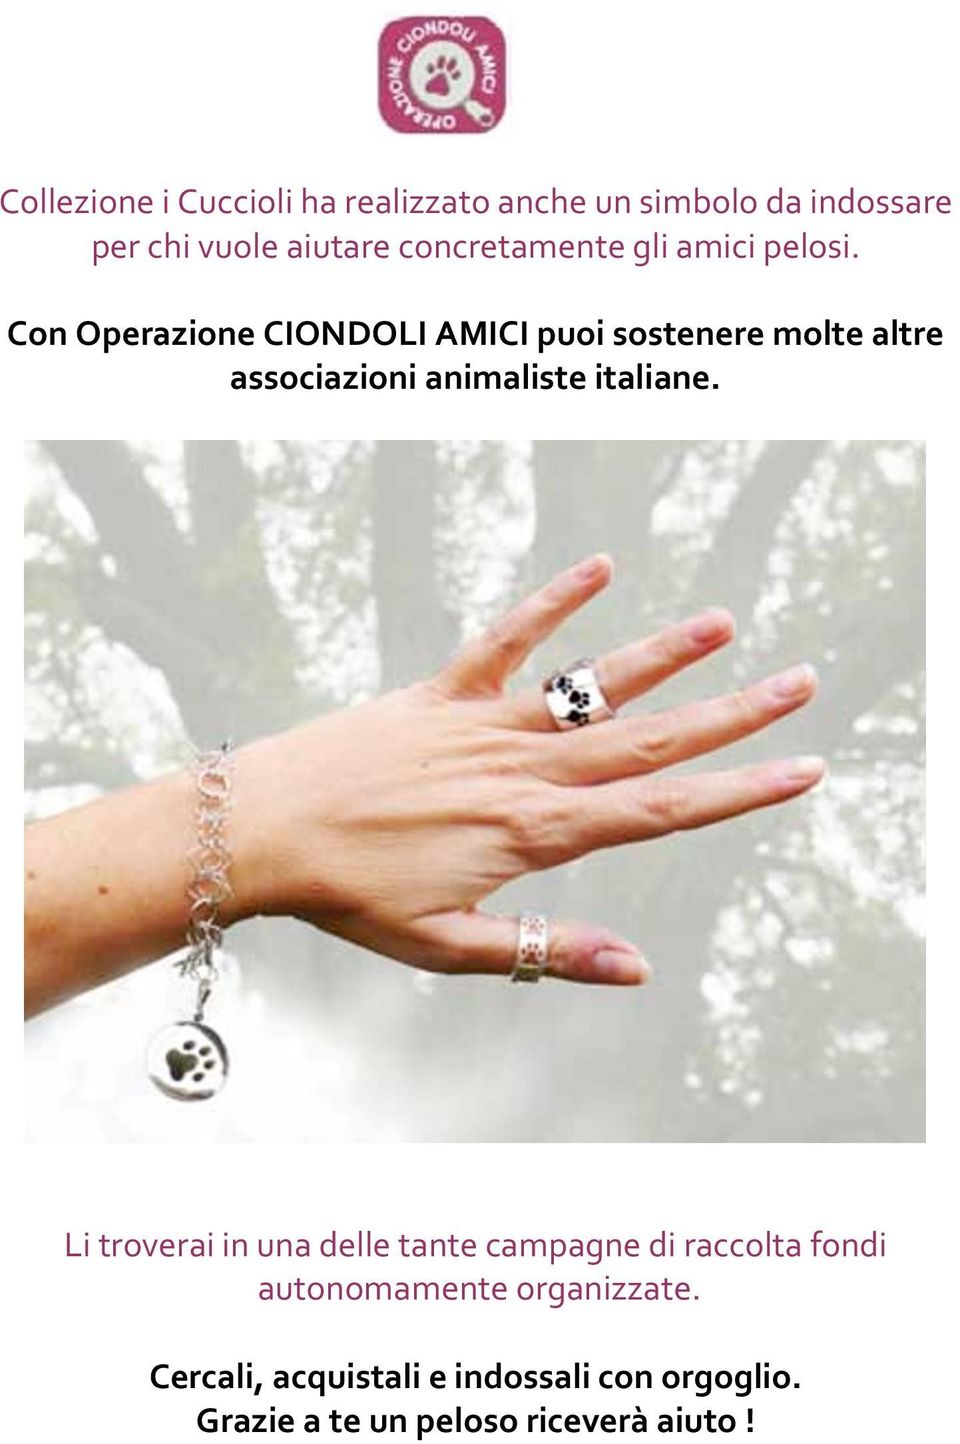 Con Operazione CIONDOLI AMICI puoi sostenere molte altre associazioni animaliste italiane.